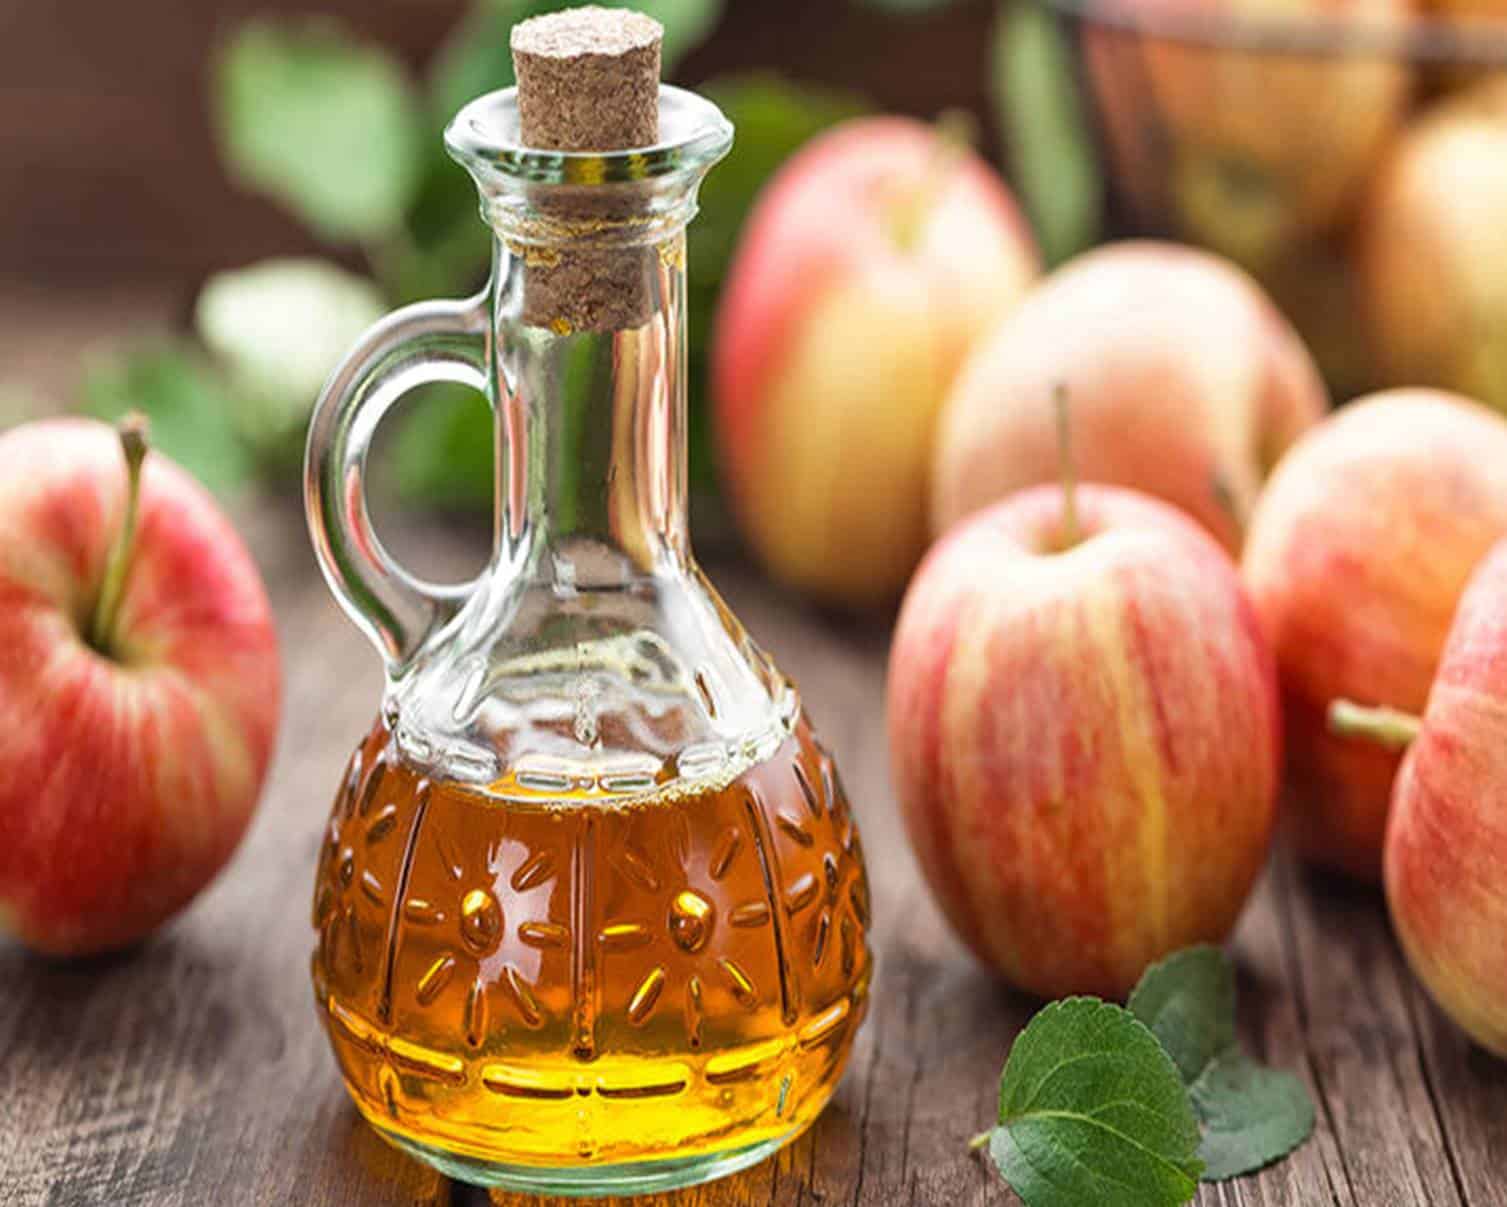 Vinagre de maçã faz perder peso? Saiba como usá-lo corretamente